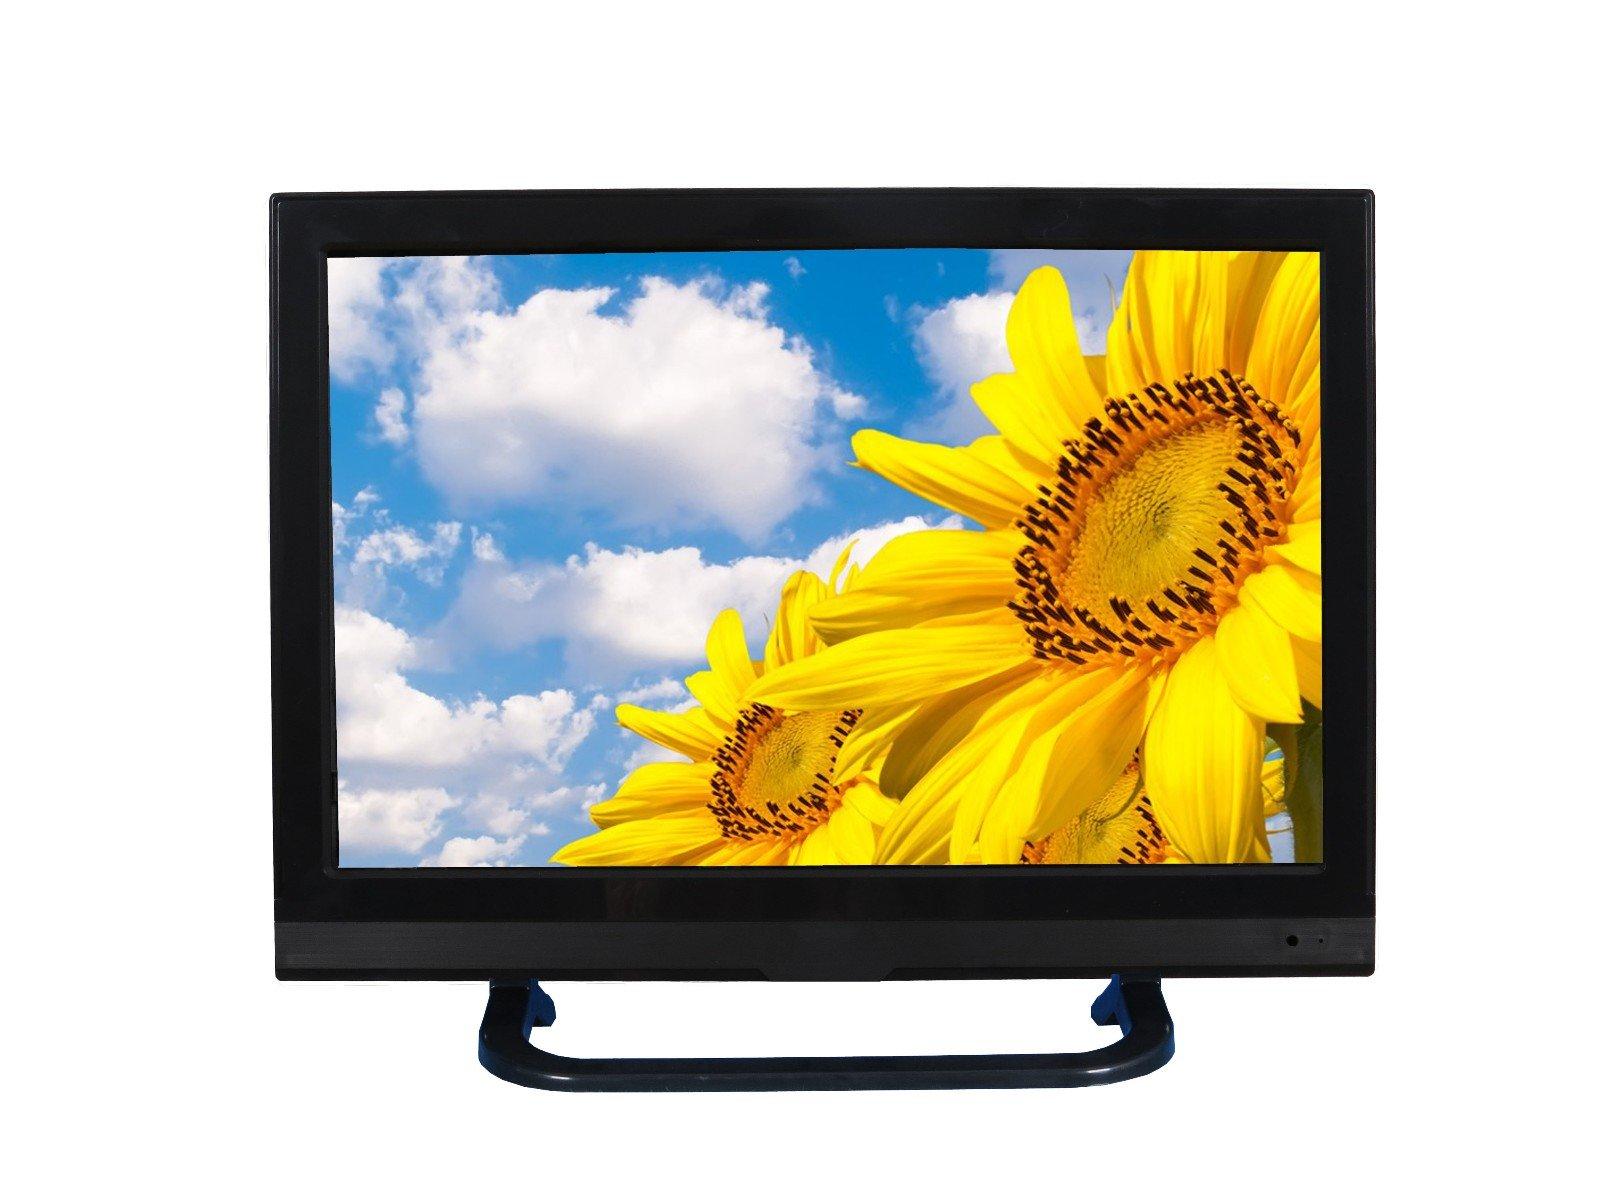 Xinyao LCD bulk 20 inch hd tv manufacturer for lcd screen